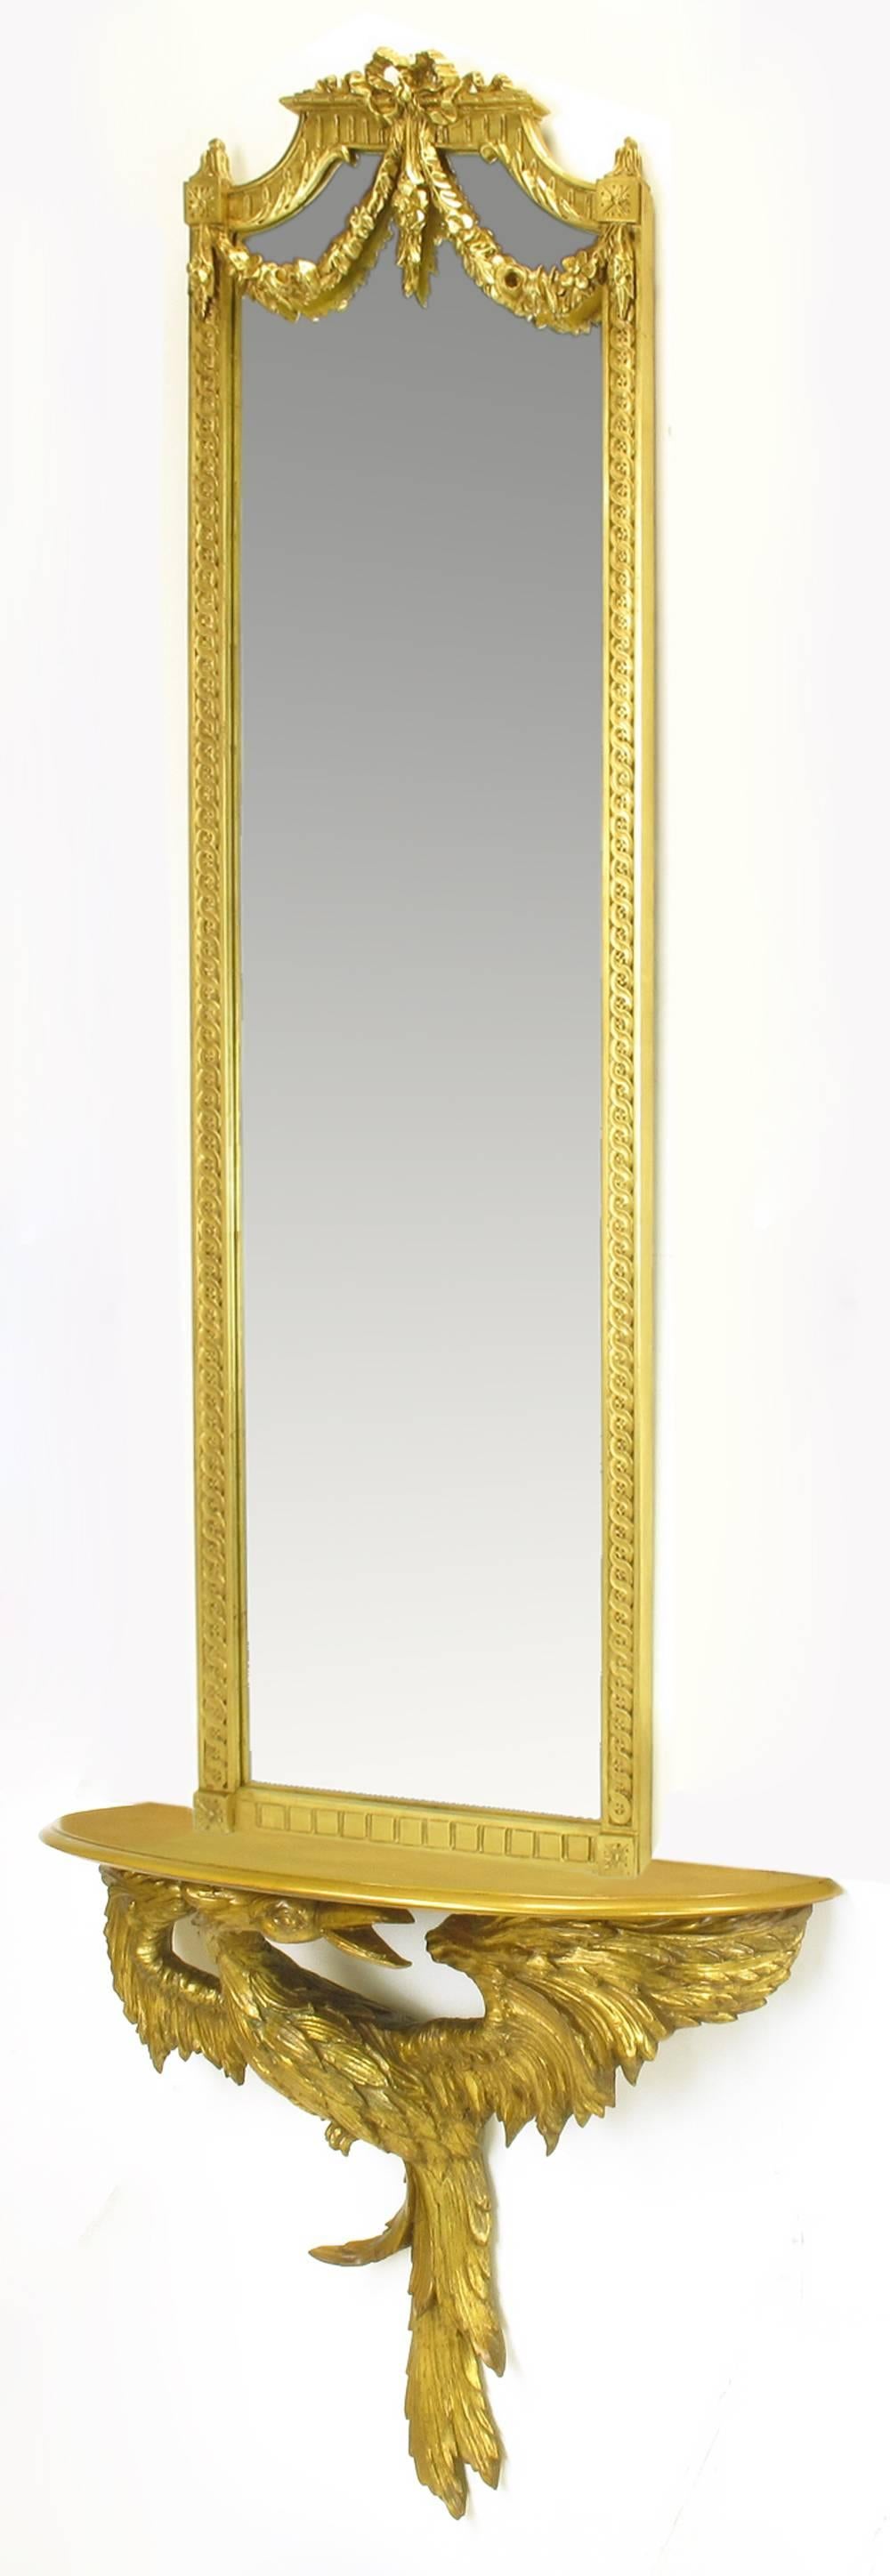 Italienischer handgeschnitzter und vergoldeter Konsolenspiegel aus Obstholz in Form eines Phönix. Eine sehr komplizierte Arbeit, bei der jede Feder gerillt ist. Der Vogel hält eine demilune Oberseite und einen 60-Zoll-Spiegel mit Band und floralen